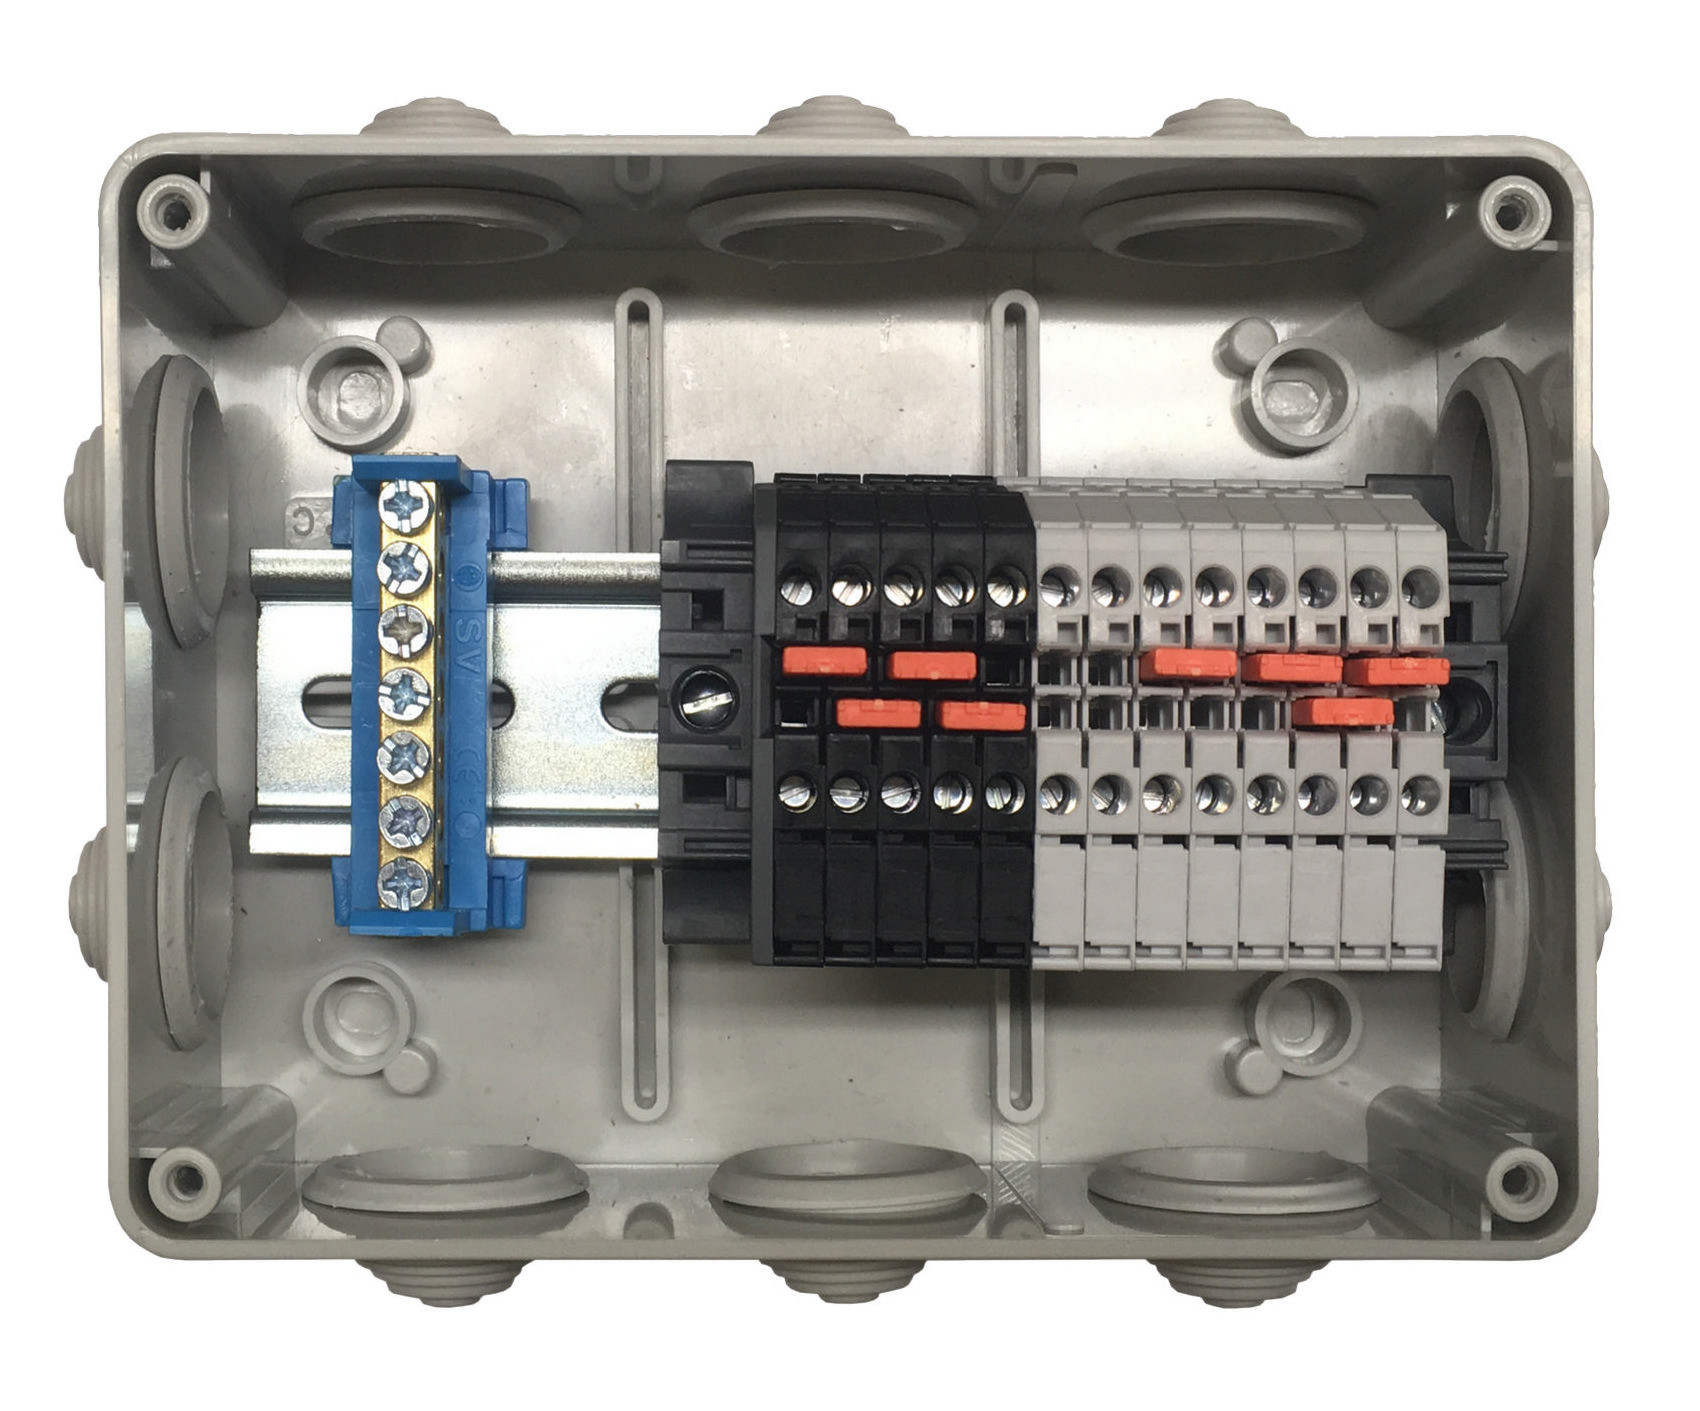 PM100CZ Instalační krabice s propojovacími svorkami pro připojení termoelektrických hlav a max. 8 termostatů